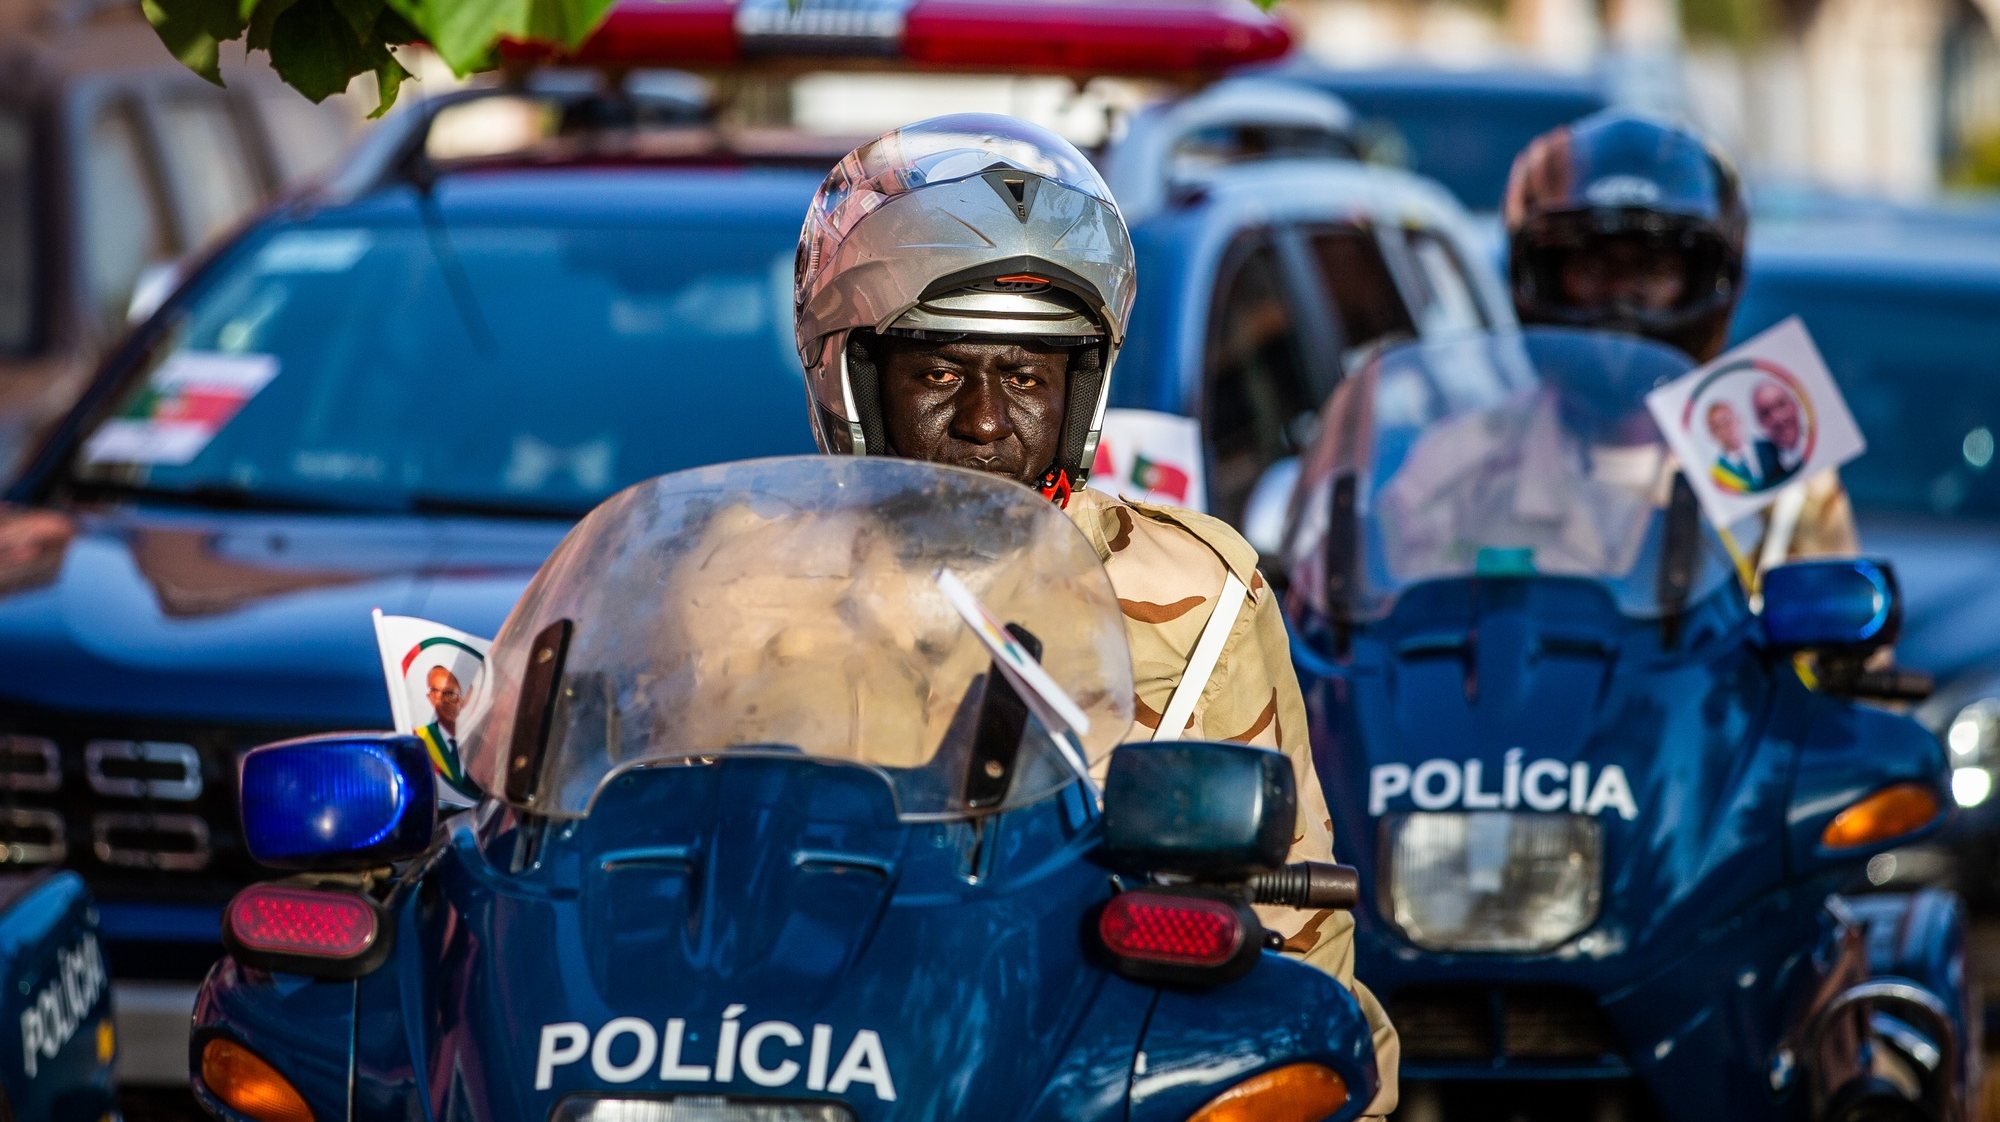 Um polícia conduz uma moto na rua, em Bissau, na Guiné-Bissau, 15 de maio de 2021. JOSÉ SENA GOULÃO/LUSA